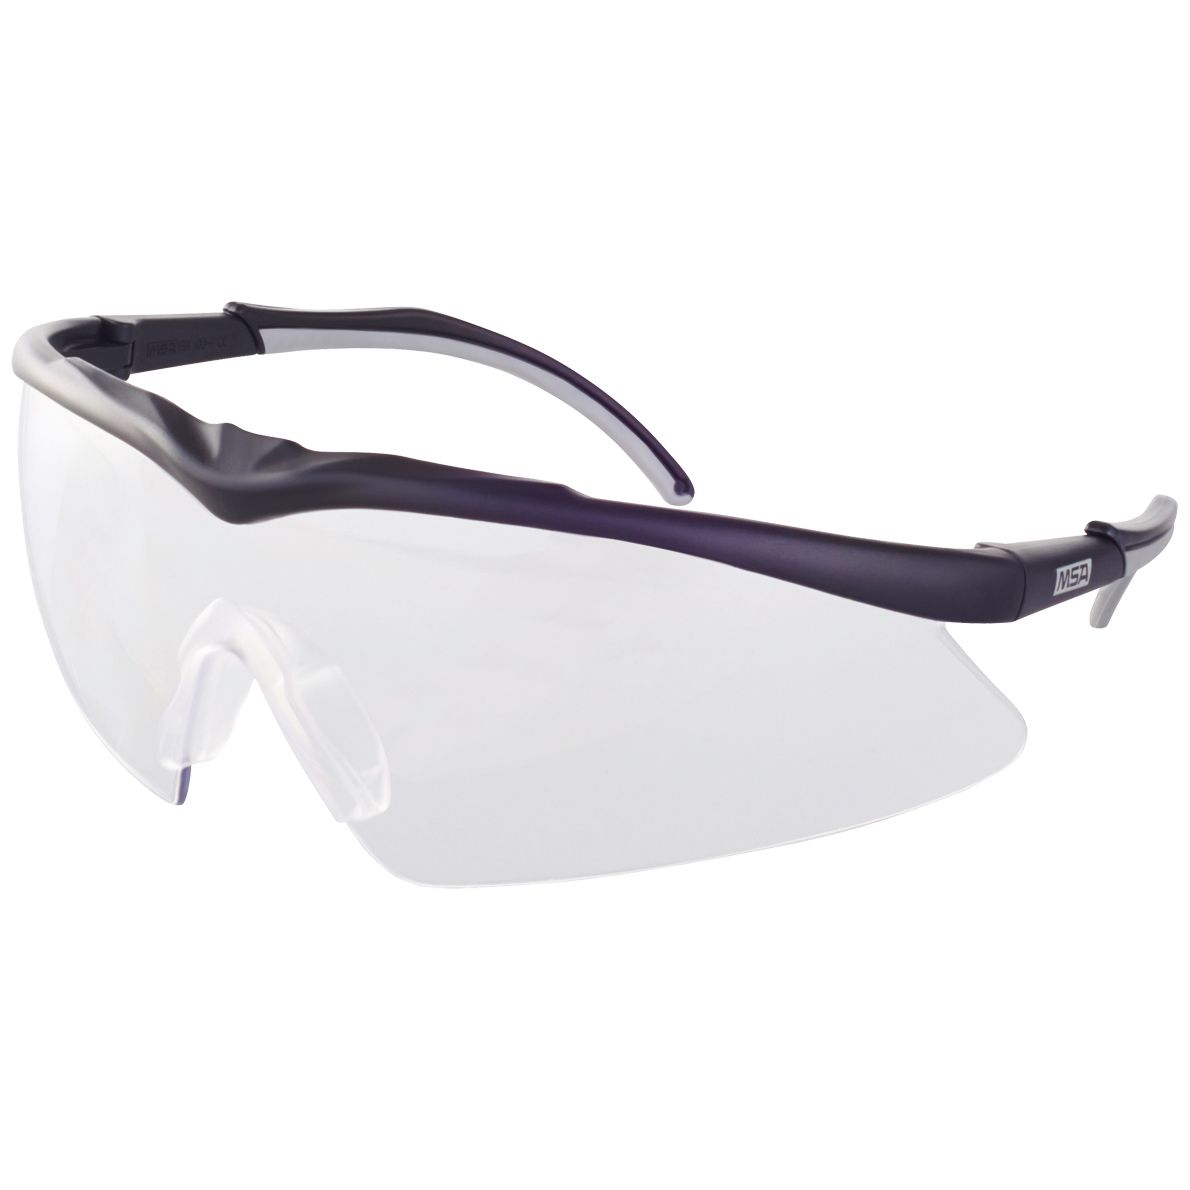 MSA TecTor Arbeits- & Militär-Schutzbrille - EN 166 & STANAG 2920/4296 - Schießbrille + Brillenbeutel - Klar